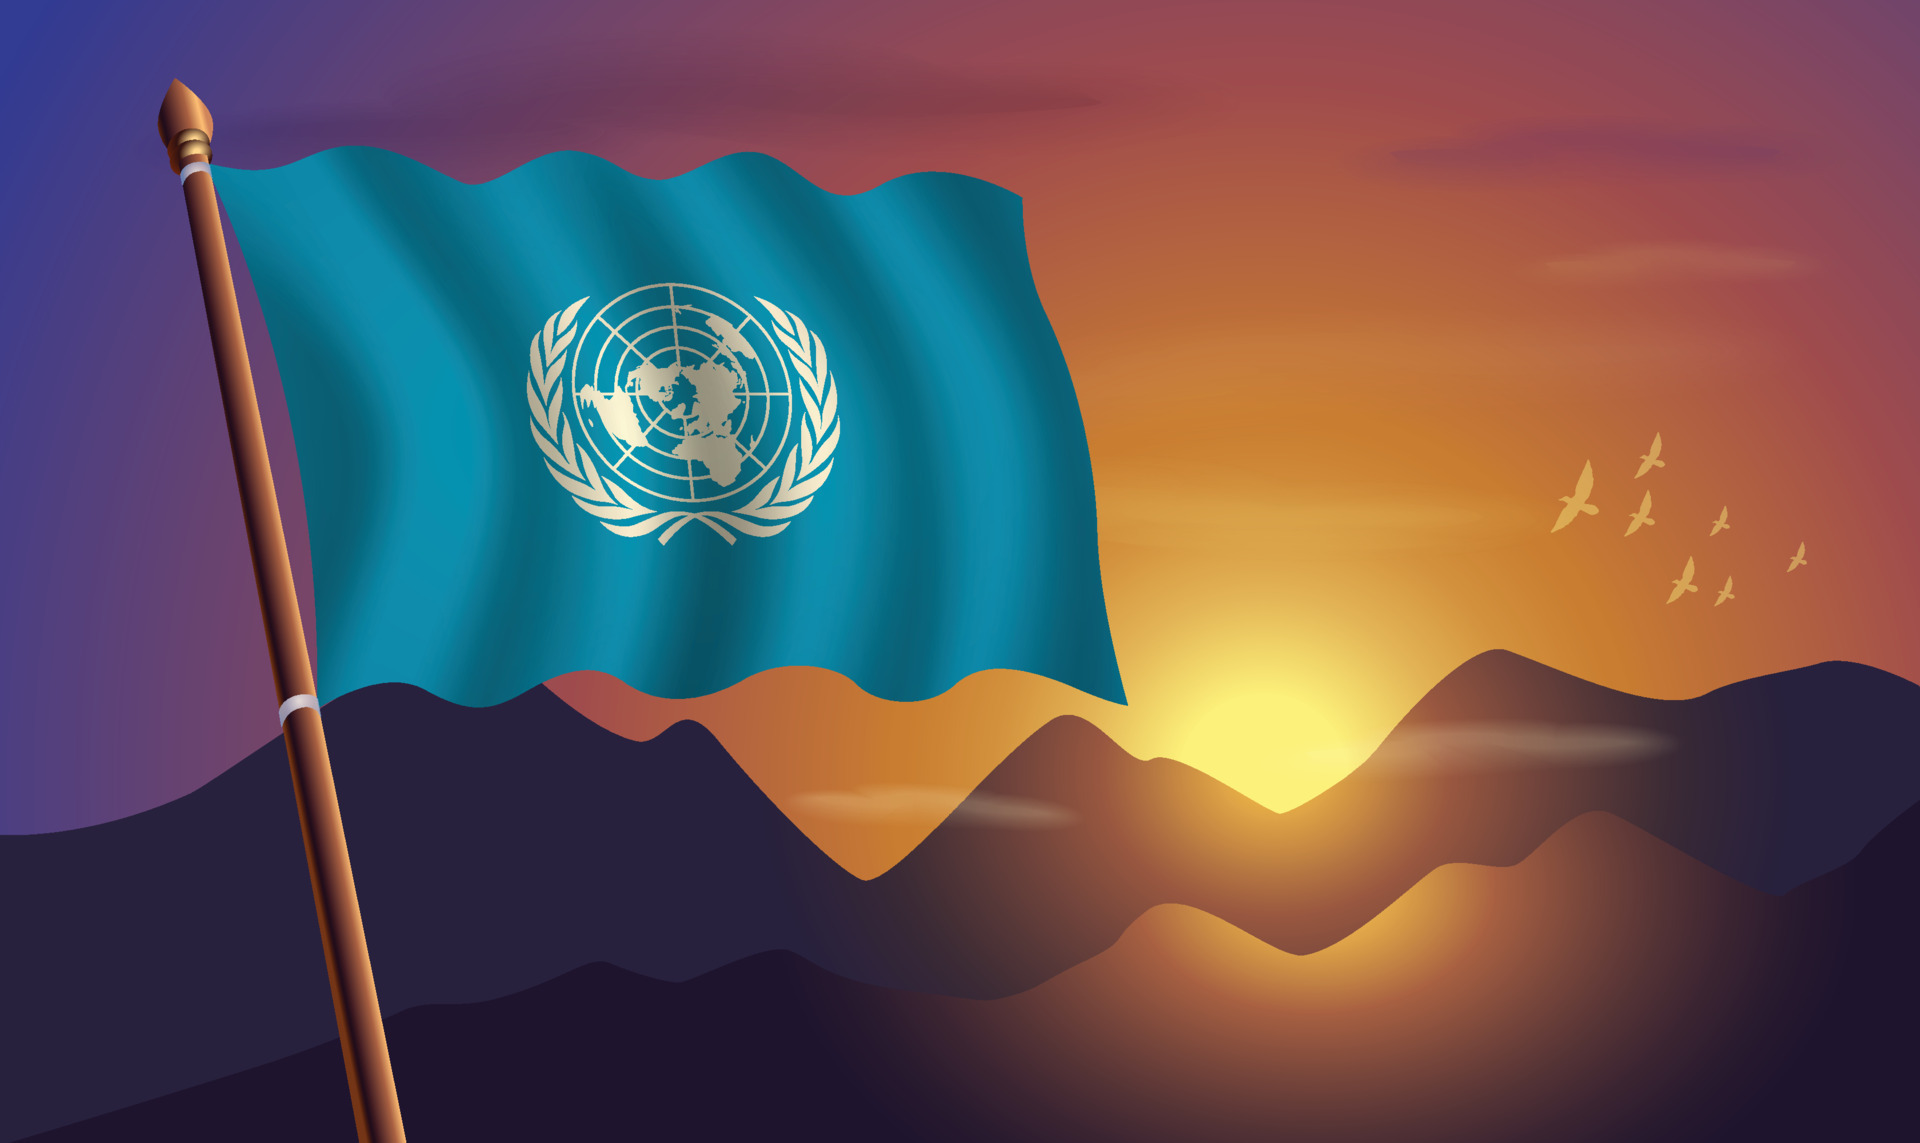 Cờ Liên Hợp Quốc: Cờ Liên Hợp Quốc là biểu tượng của sự hiệp nhất và hòa bình trên toàn cầu. Khi nhìn thấy cờ của Liên Hợp Quốc, chúng ta có thể cảm nhận được niềm tin vào một thế giới tốt đẹp hơn và sự hy vọng về một tương lai tươi sáng hơn. Hãy cùng nhau khám phá ý nghĩa đong đầy của cờ Liên Hợp Quốc qua hình ảnh.